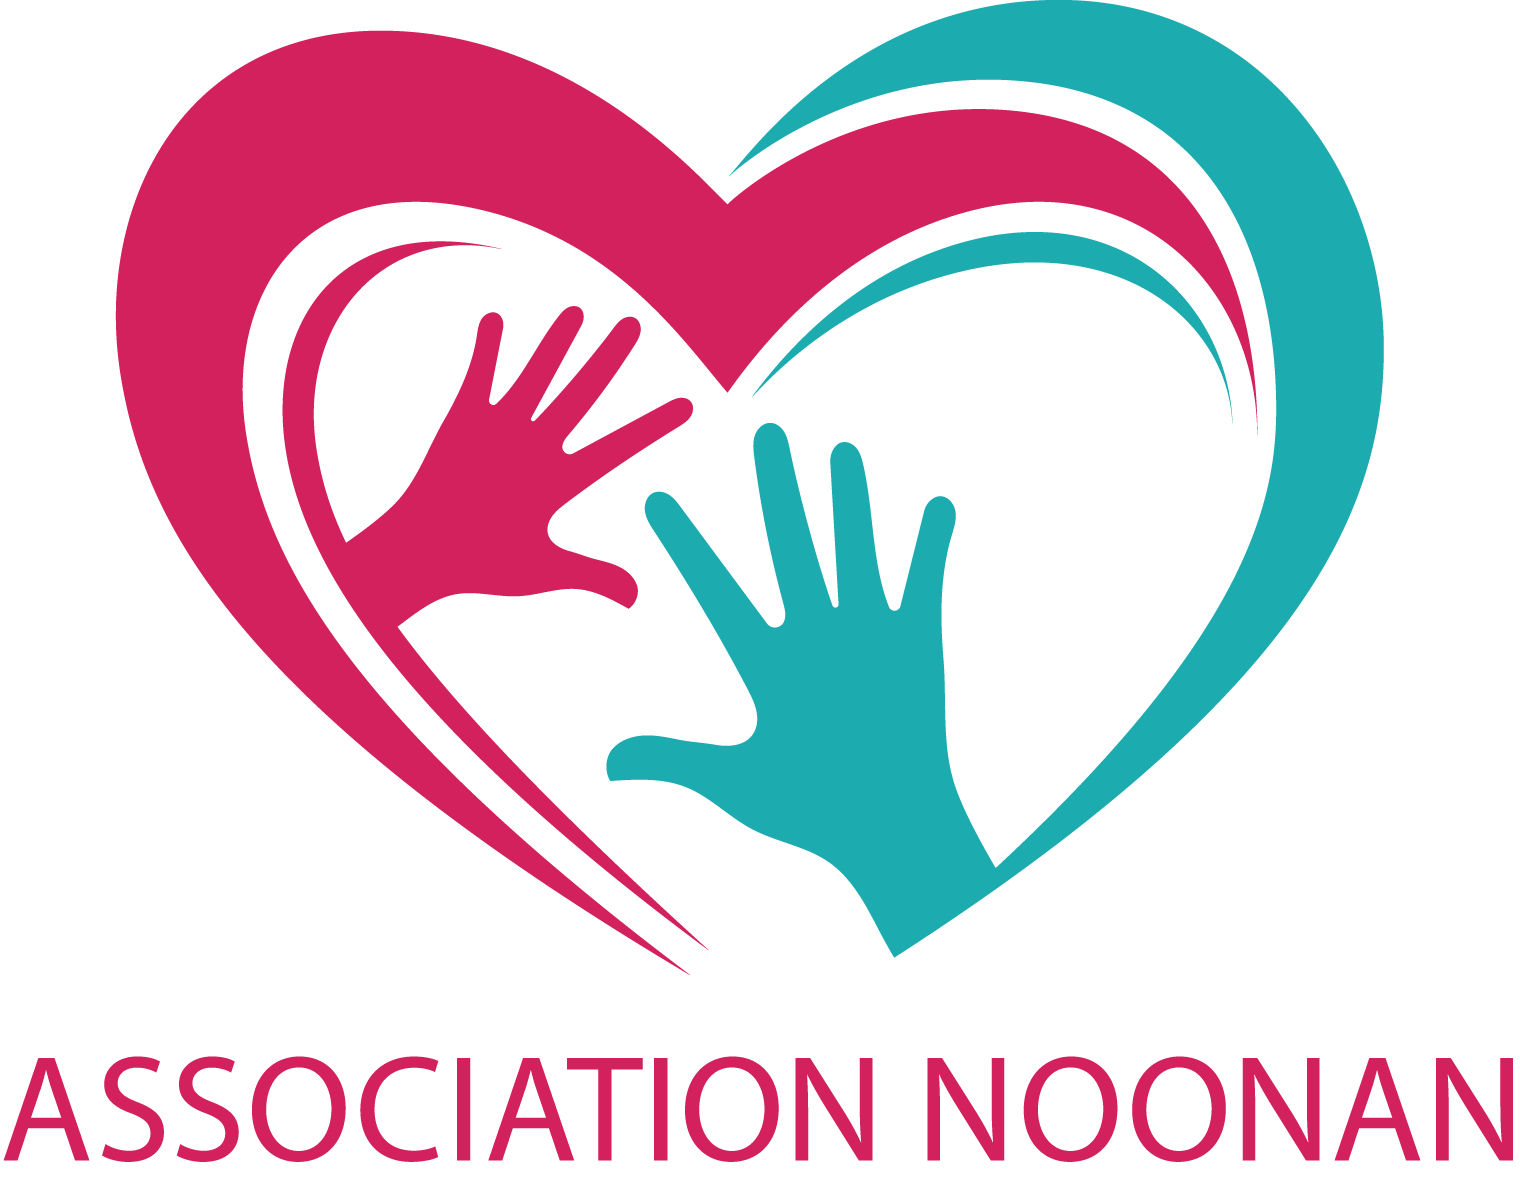 Association Noonan